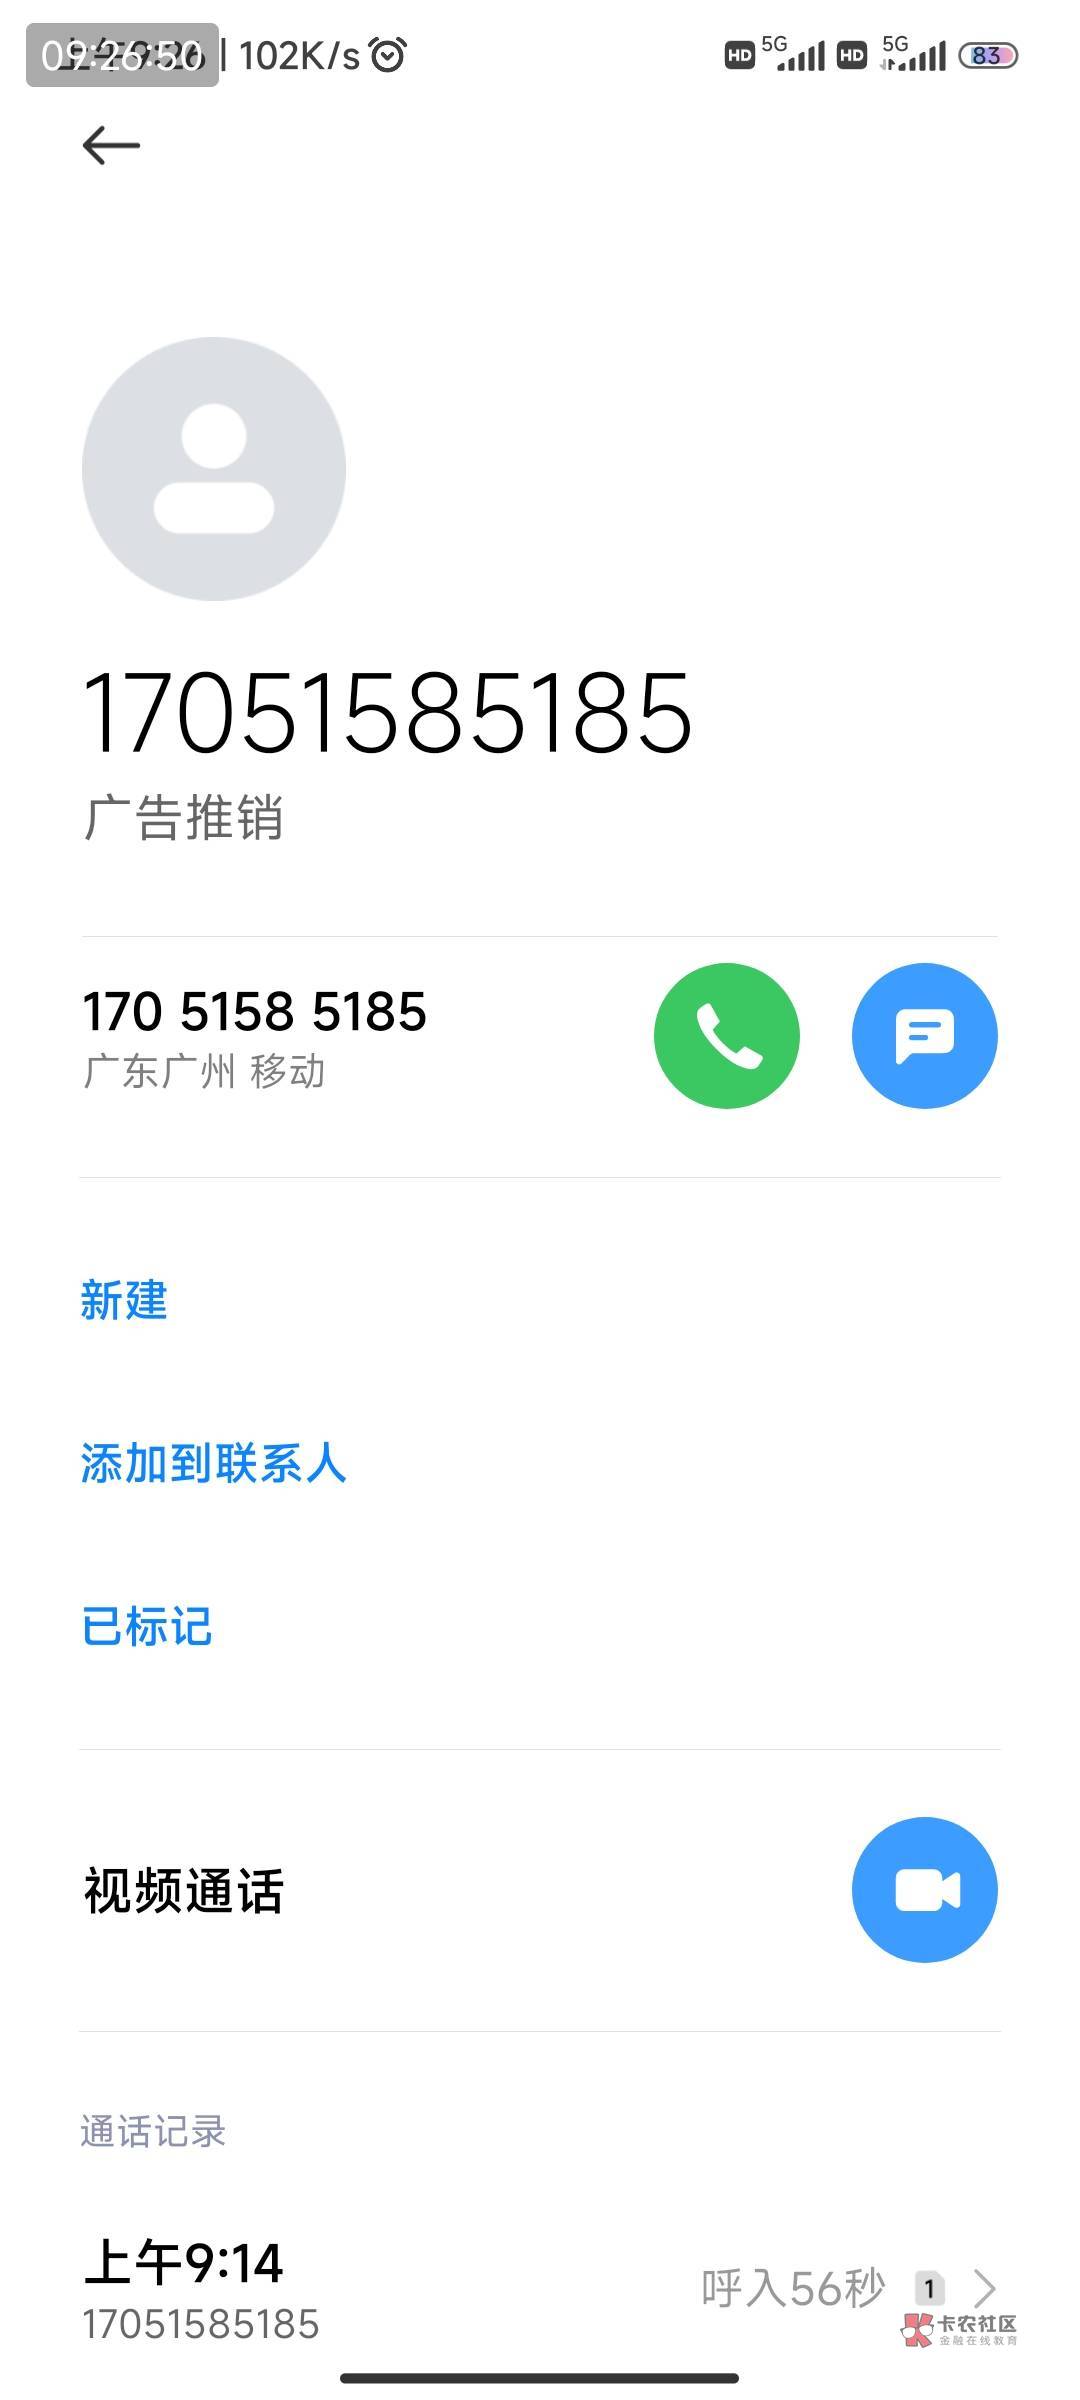 安逸花  六月借了一笔  今天来了个电话 又下1400



91 / 作者:谁能想到啊 / 